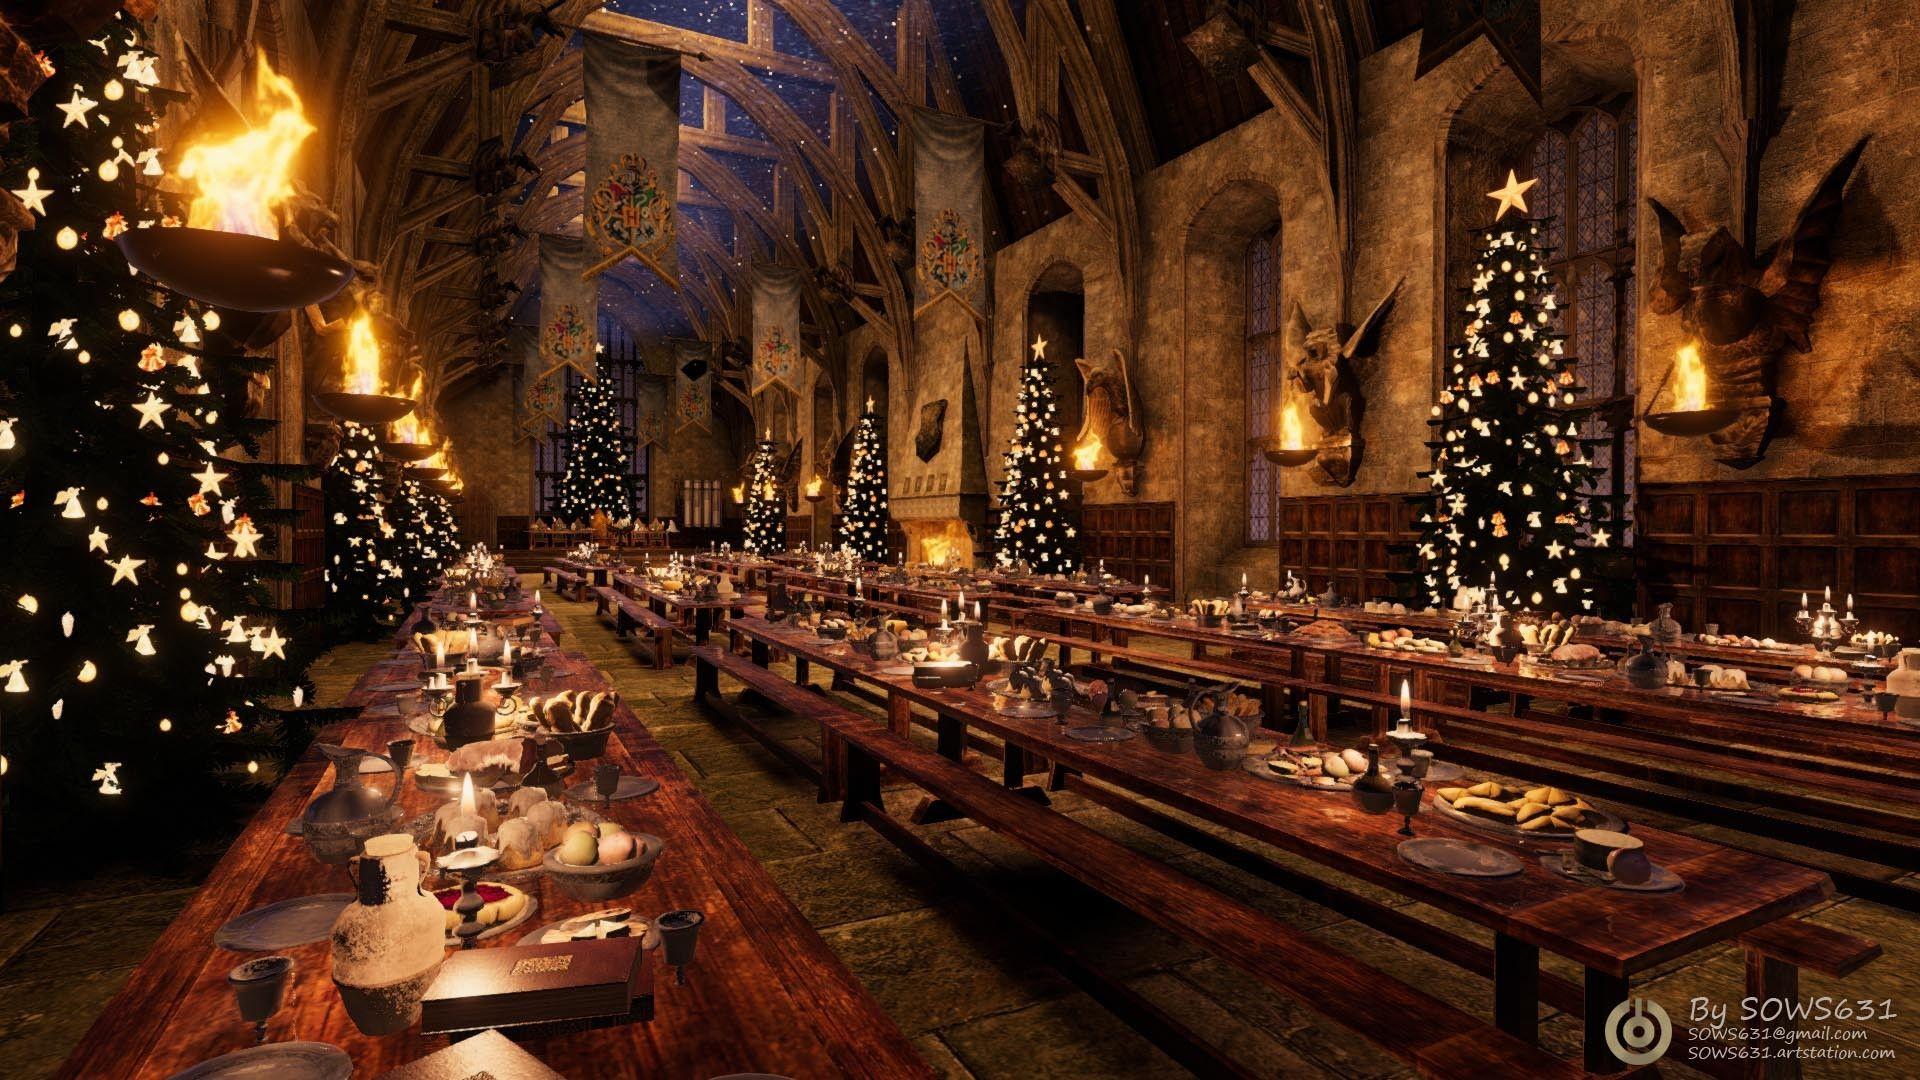 Hình nền Giáng sinh tại Hogwarts miễn phí hàng đầu: Với danh sách hình nền Giáng sinh tại Hogwarts miễn phí hàng đầu, bạn sẽ có một không gian Giáng sinh hoàn hảo, đặc biệt và đầy ma lực trên điện thoại hay máy tính của mình. Hãy truy cập ngay để tải về những hình ảnh đẹp nhất và làm bộ sưu tập của mình thêm phong phú.